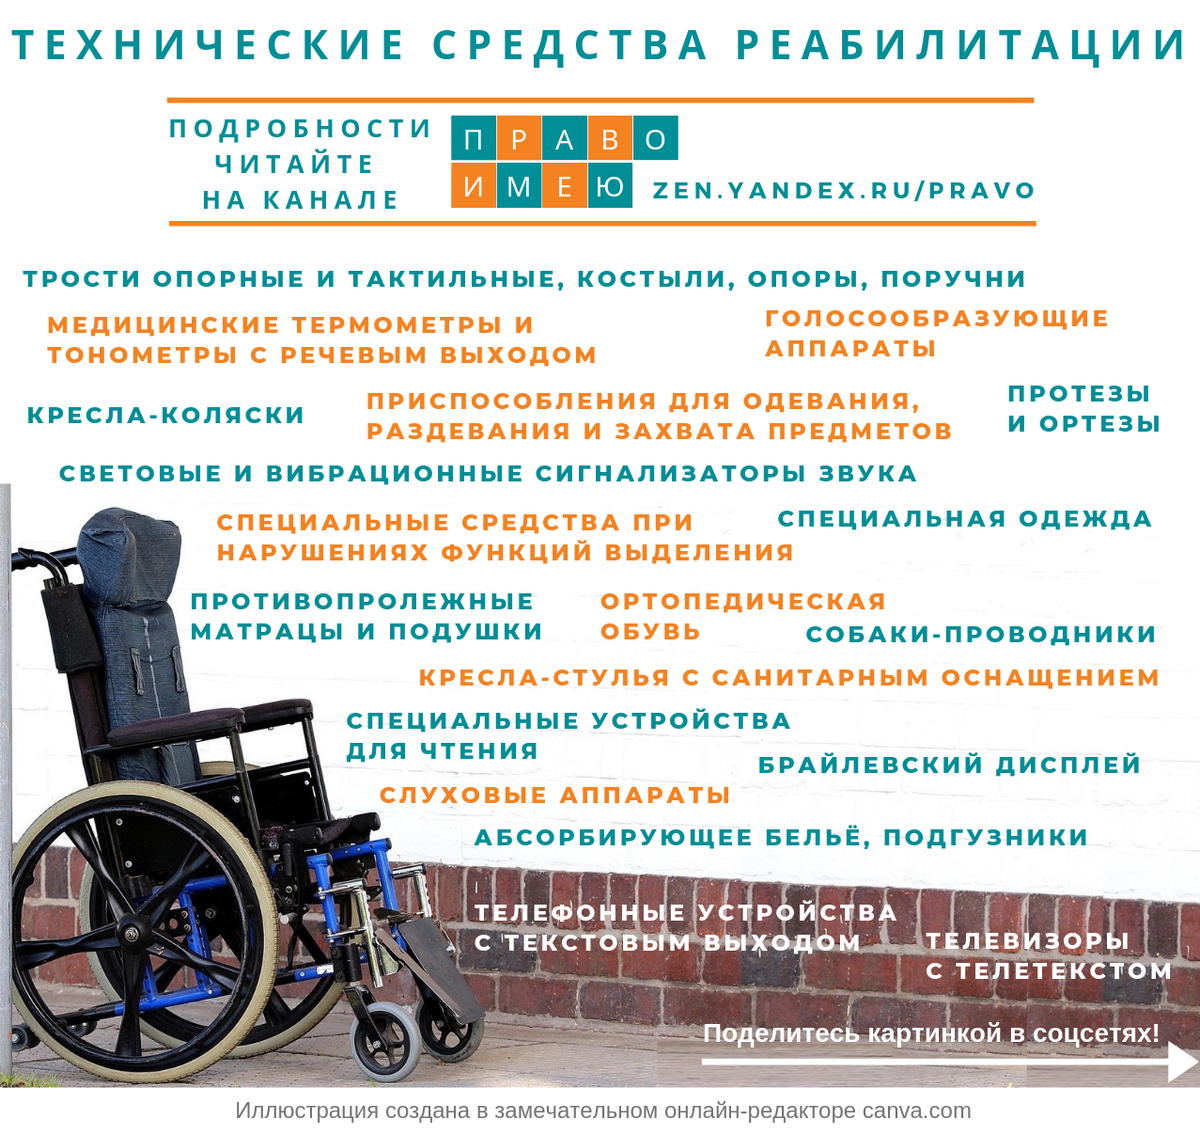 Что положено получить инвалиду 1 группы. Технические средства реабилитации для инвалидов. Texnechiskiya sredstva reabilitasii. Список технические средства реабилитации для инвалидов. Инвалиды 1 группы в колясках.